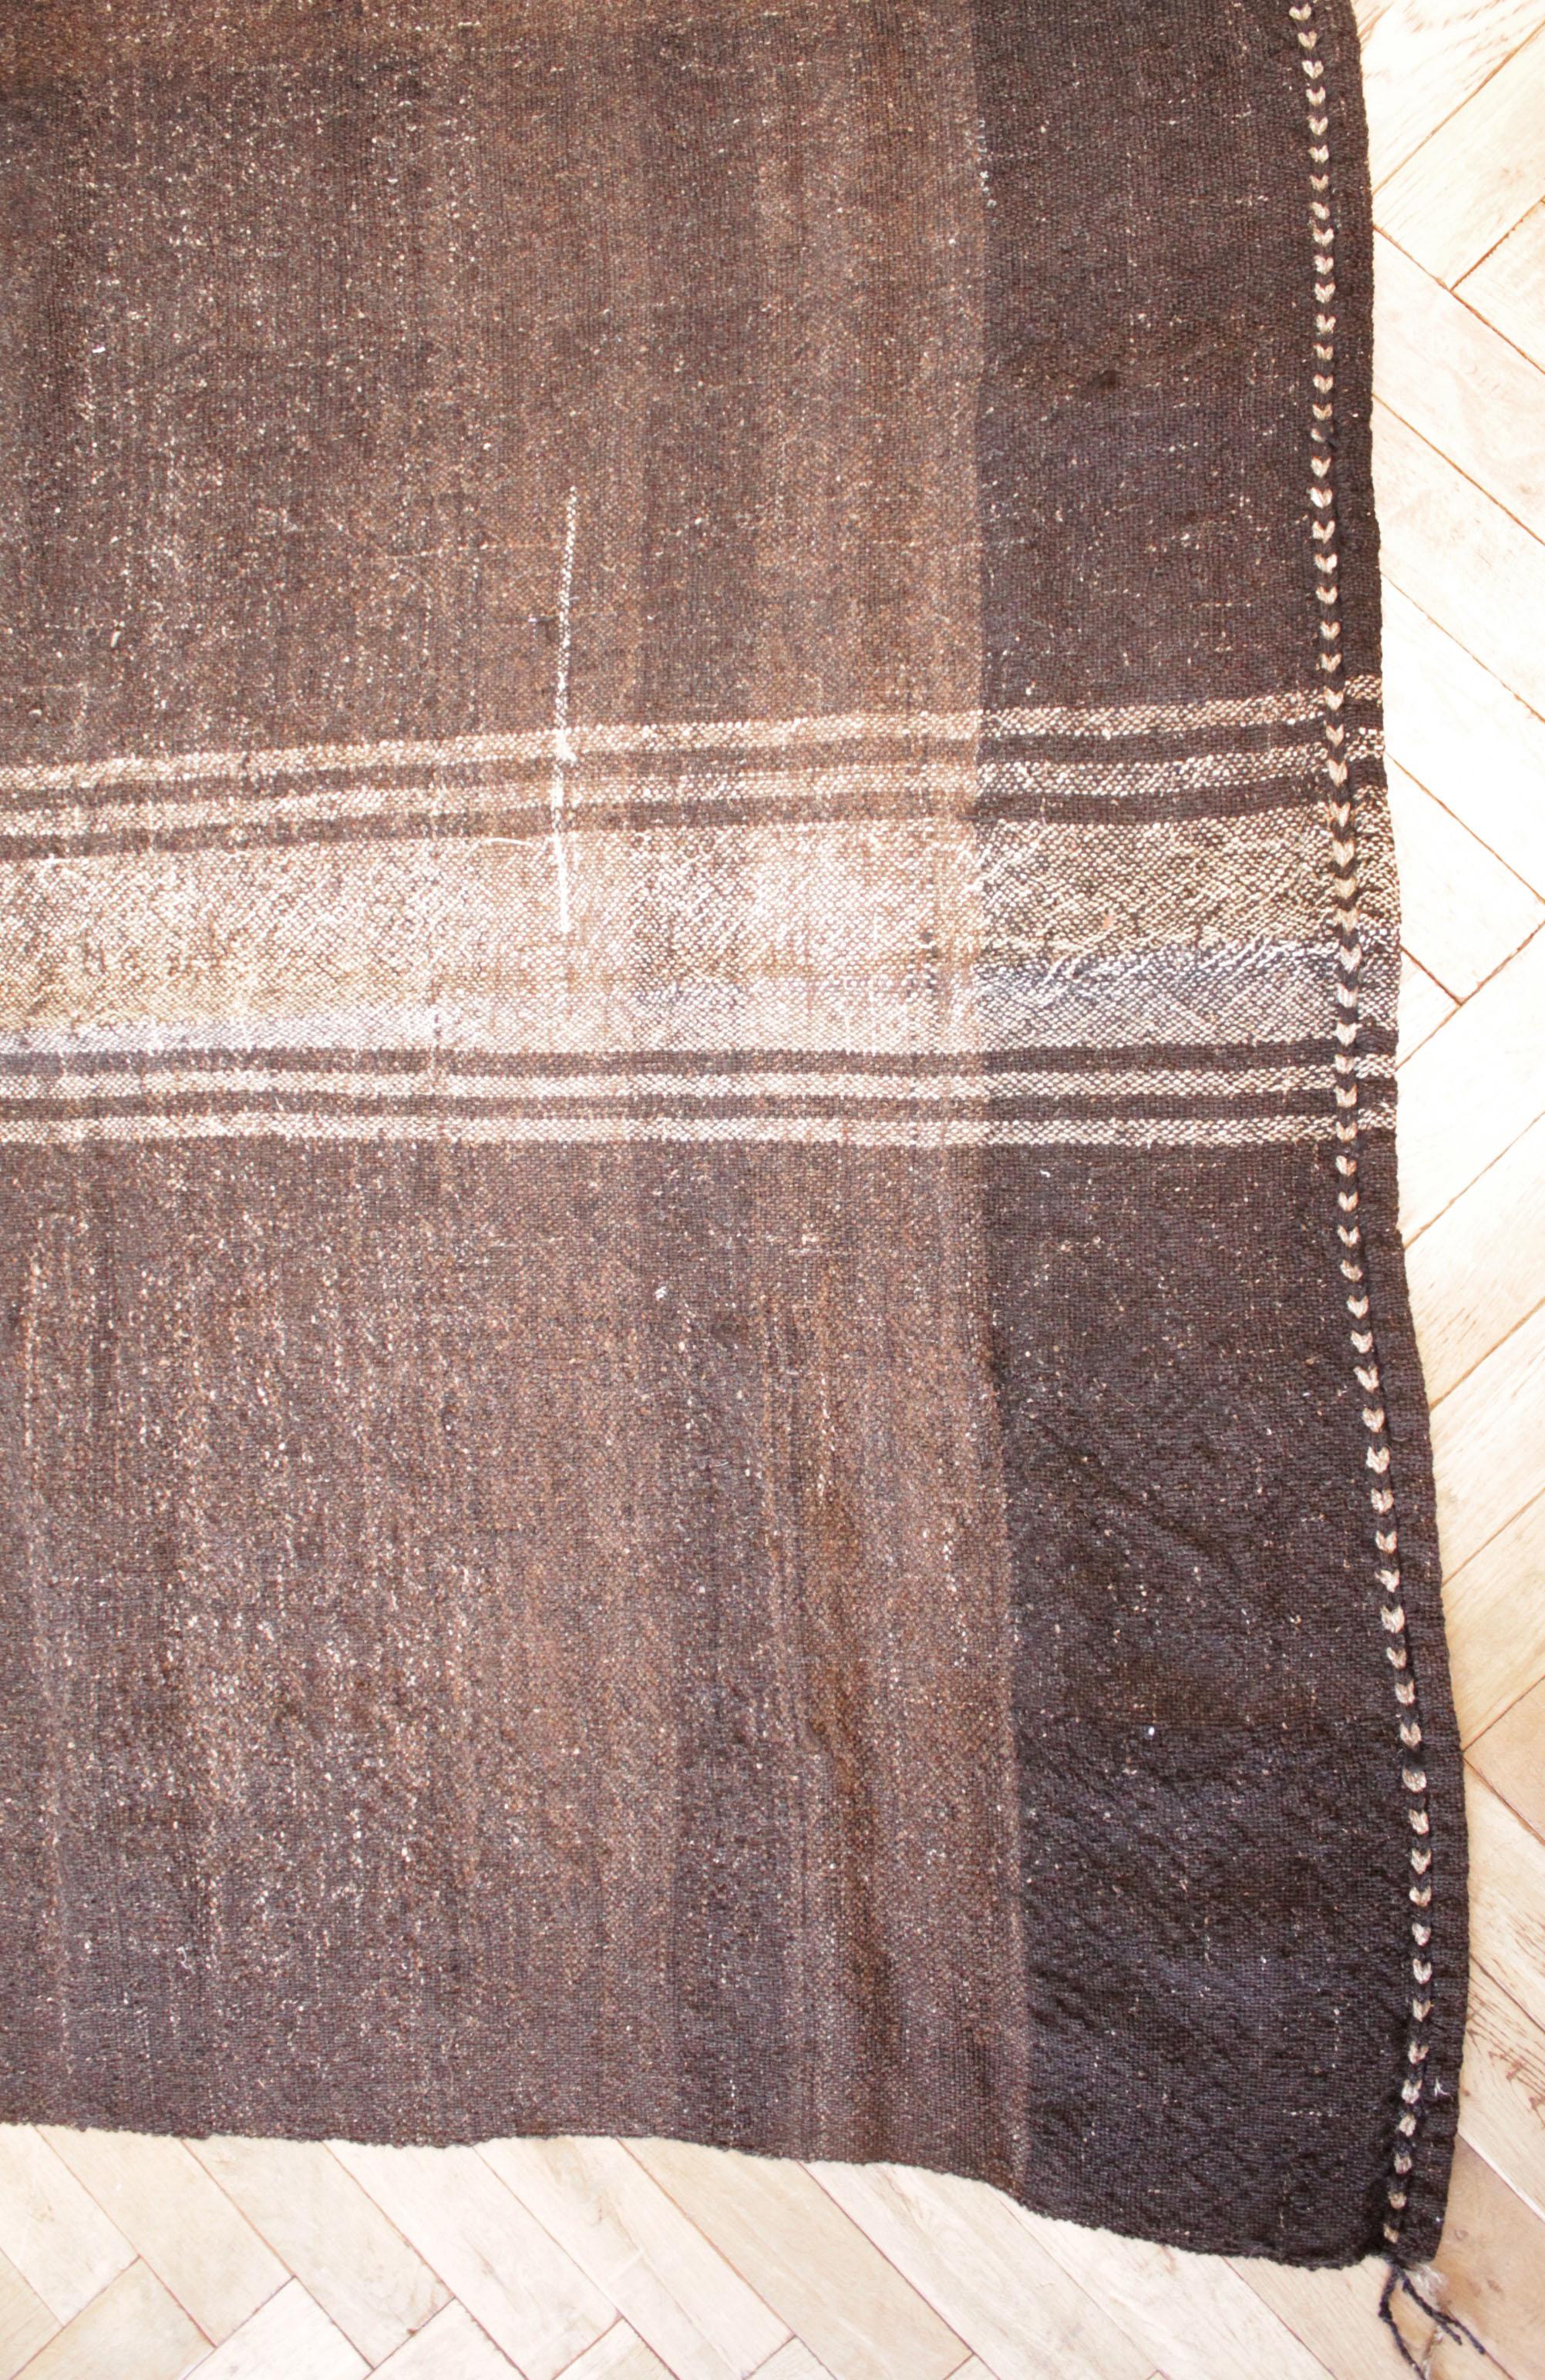 Der Bradley-Teppich
Türkischer Vintage-Teppich in Braun mit hellen Naturstreifen.
Unsere neueste Kollektion ist aus der Türkei eingetroffen. Sie eignen sich hervorragend als Teppich, oder Sie lassen sich von uns eine individuelle Ottomane aus